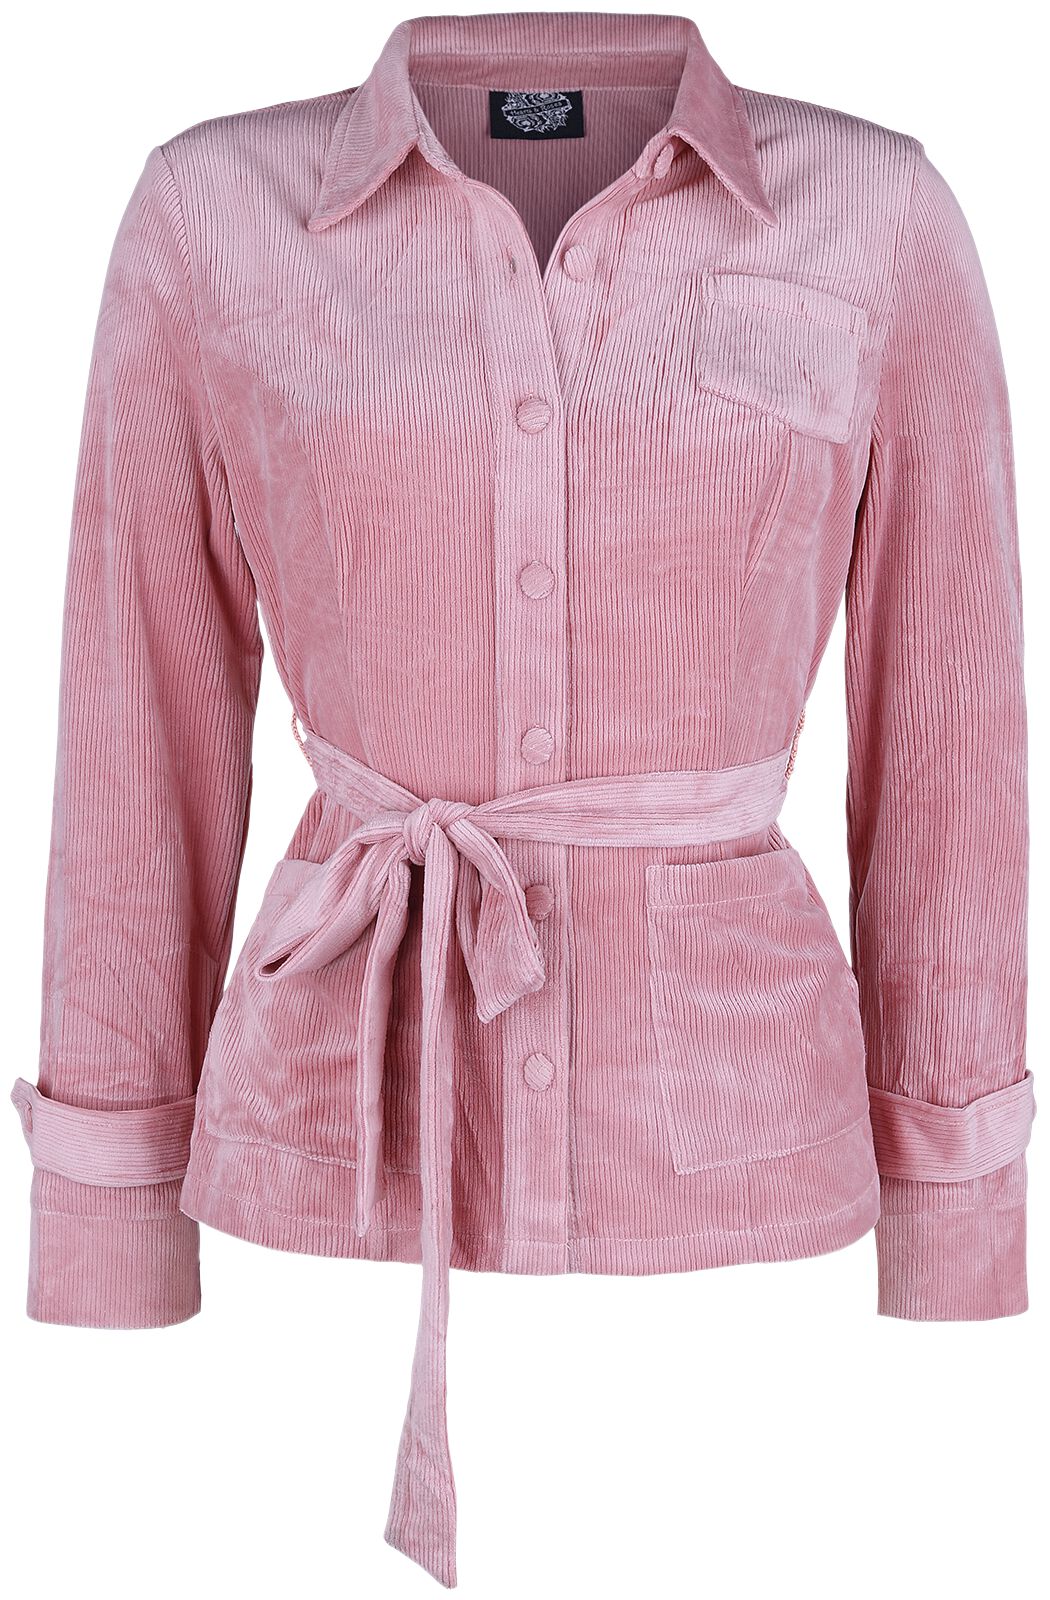 H R London Leila Blouse Bluse rosa  - Onlineshop EMP